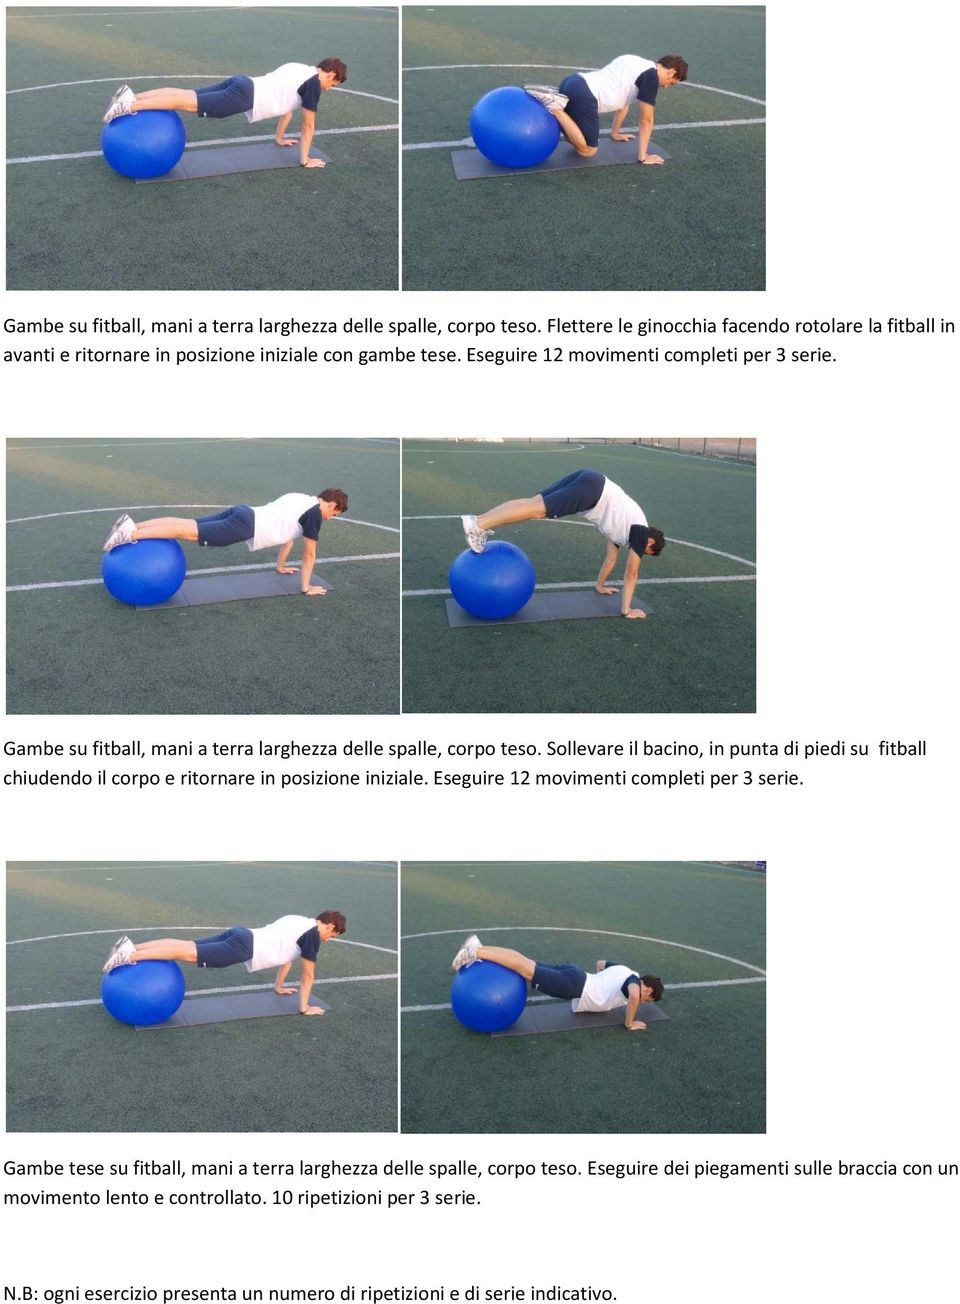 Sollevare il bacino, in punta di piedi su fitball chiudendo il corpo e ritornare in posizione iniziale. Eseguire 12 movimenti completi per 3 serie.